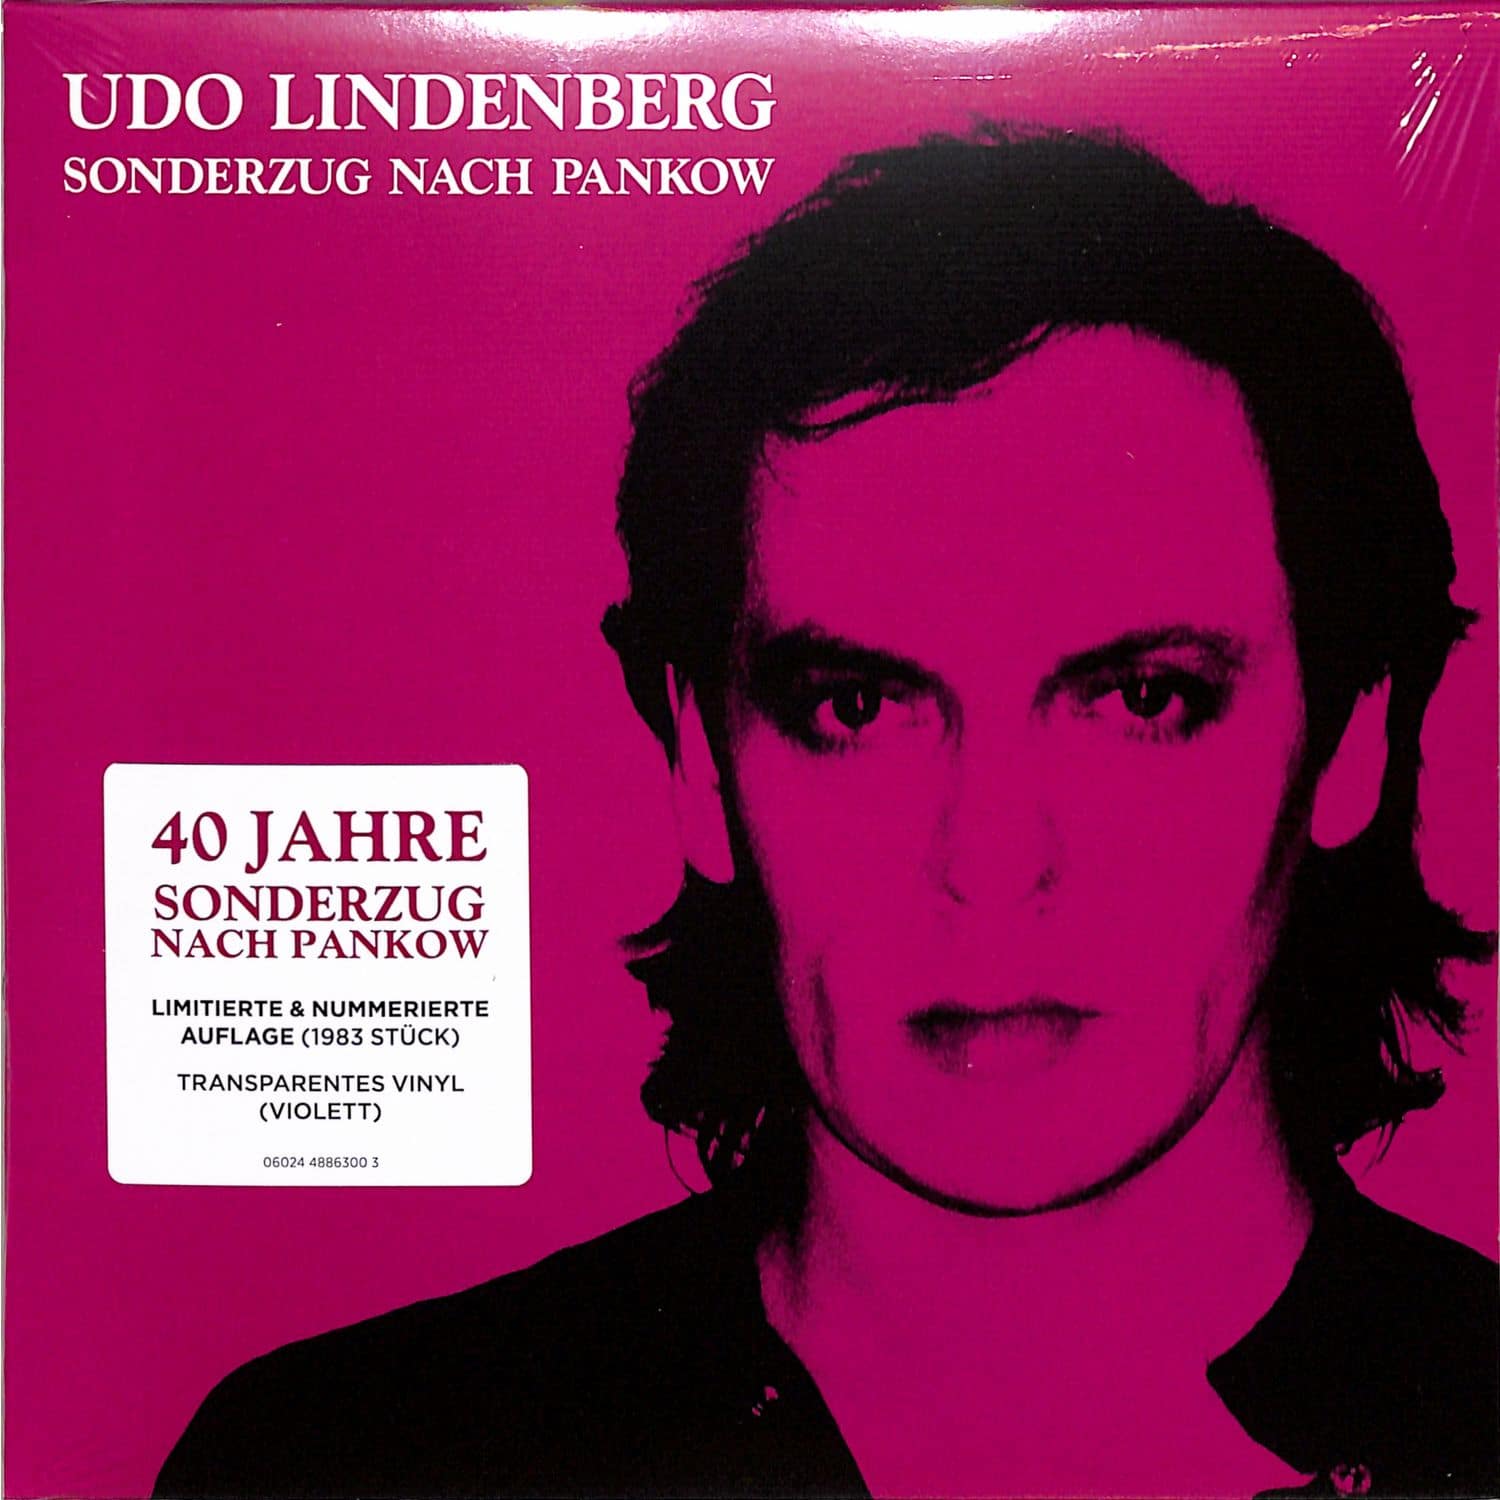 Udo Lindenberg - SONDERZUG NACH PANKOW 